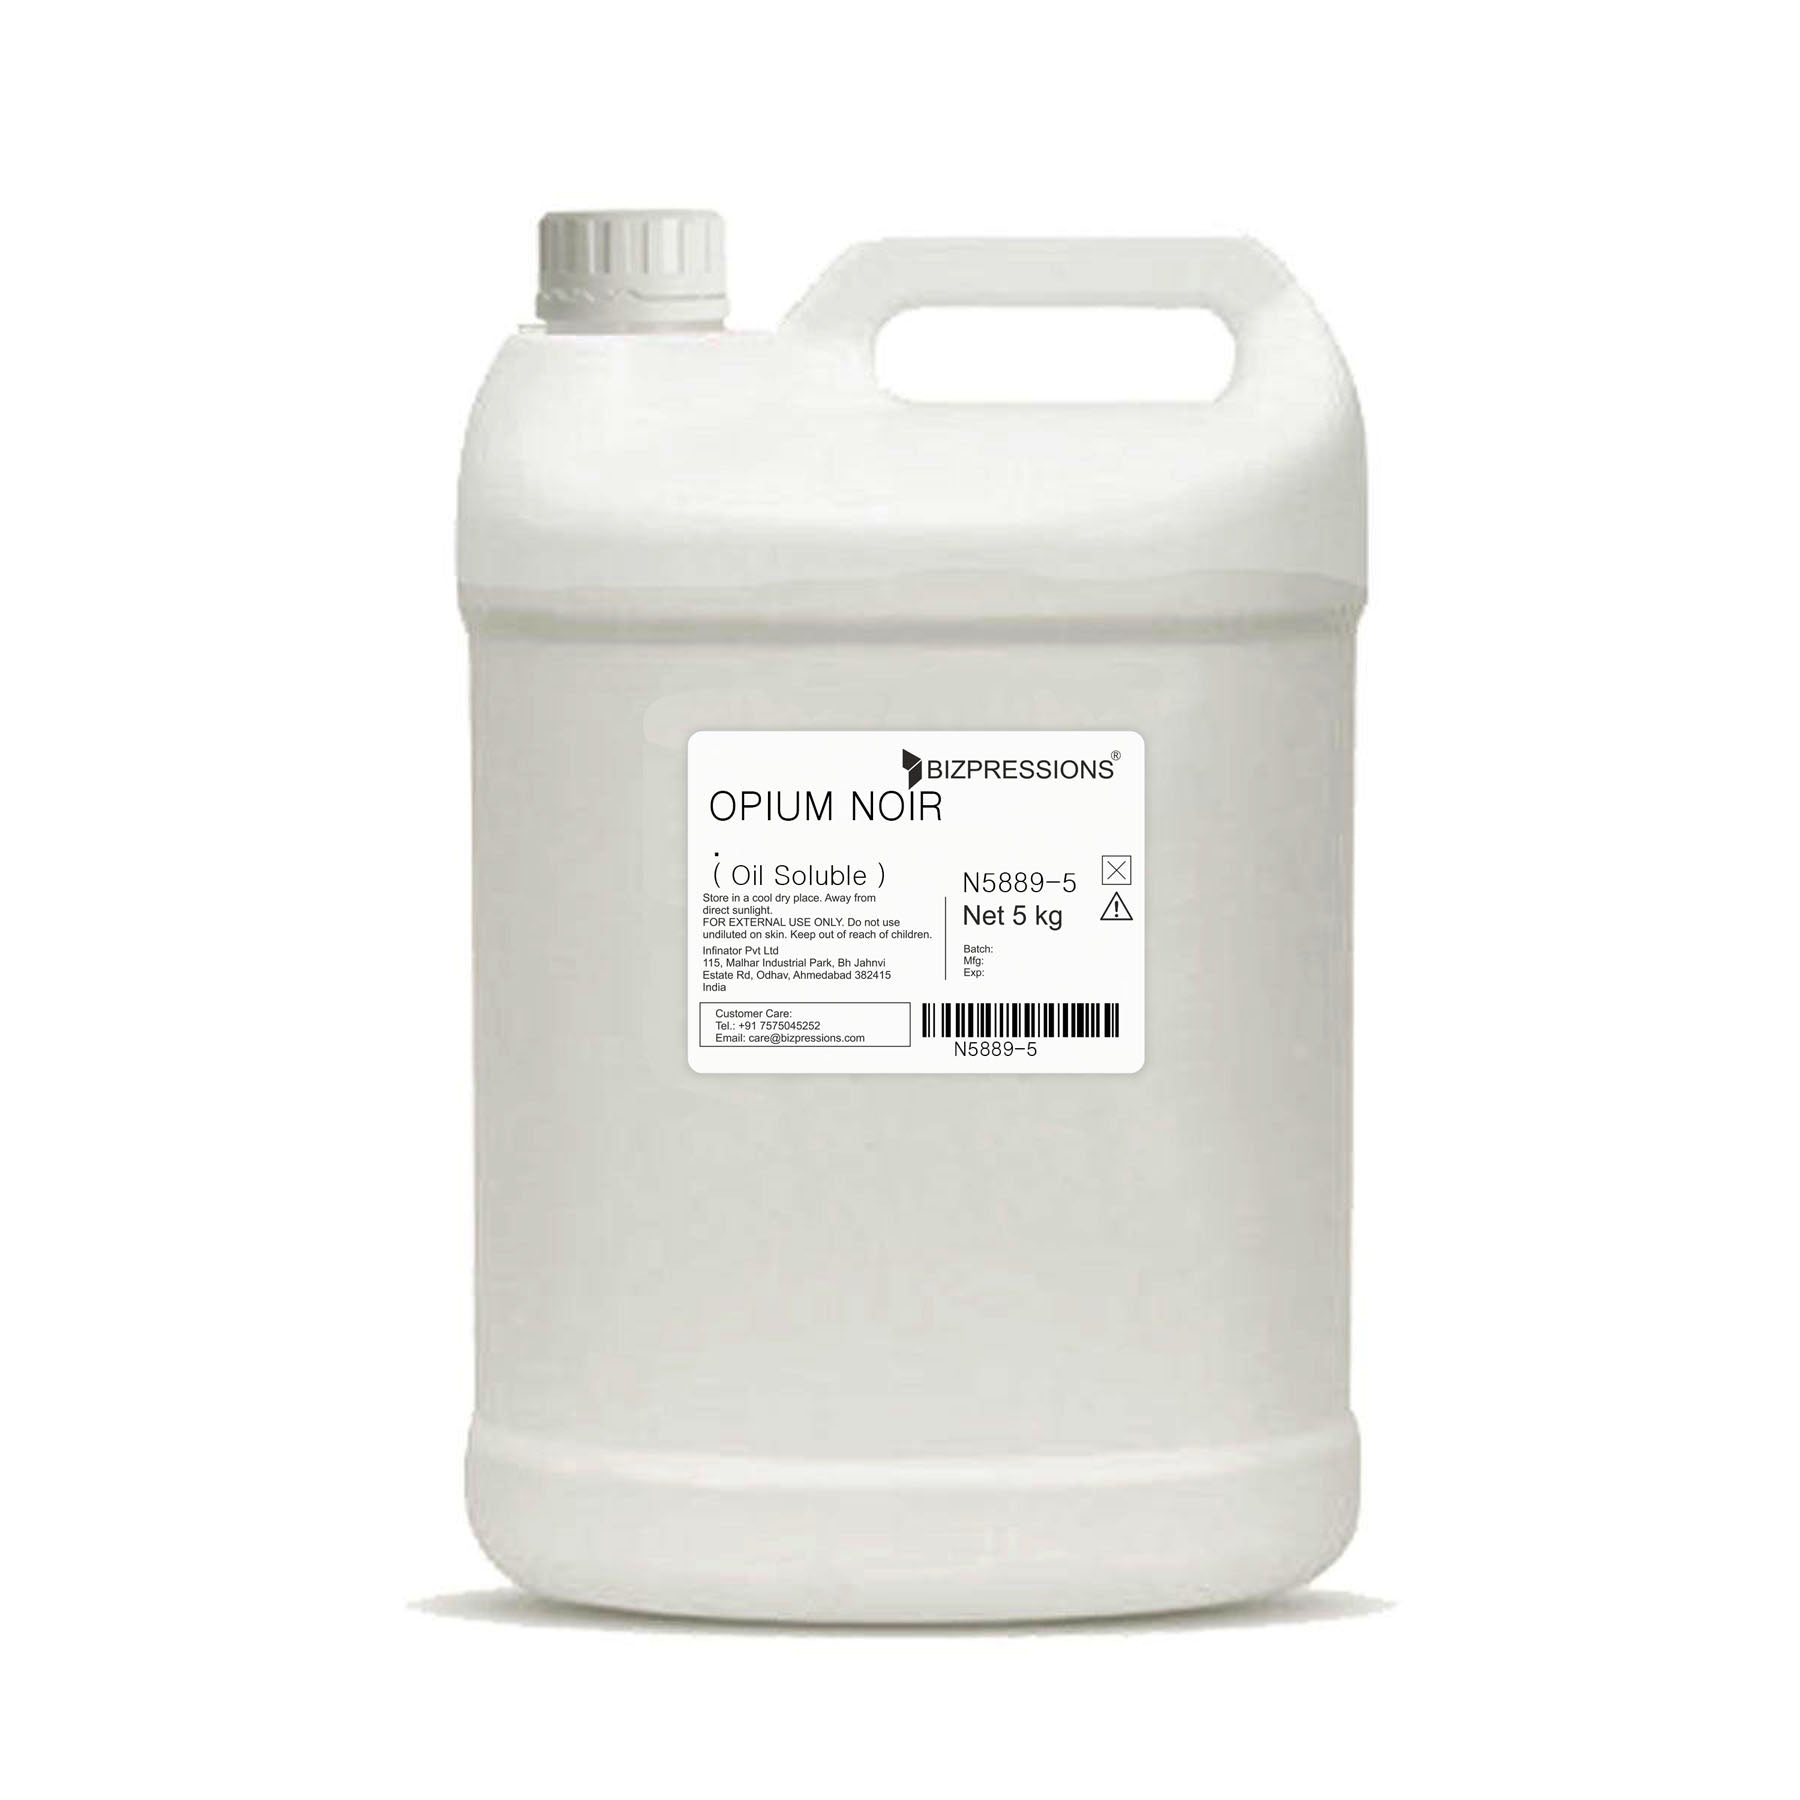 OPIUM NOIR - Fragrance ( Oil Soluble ) - 5 kg